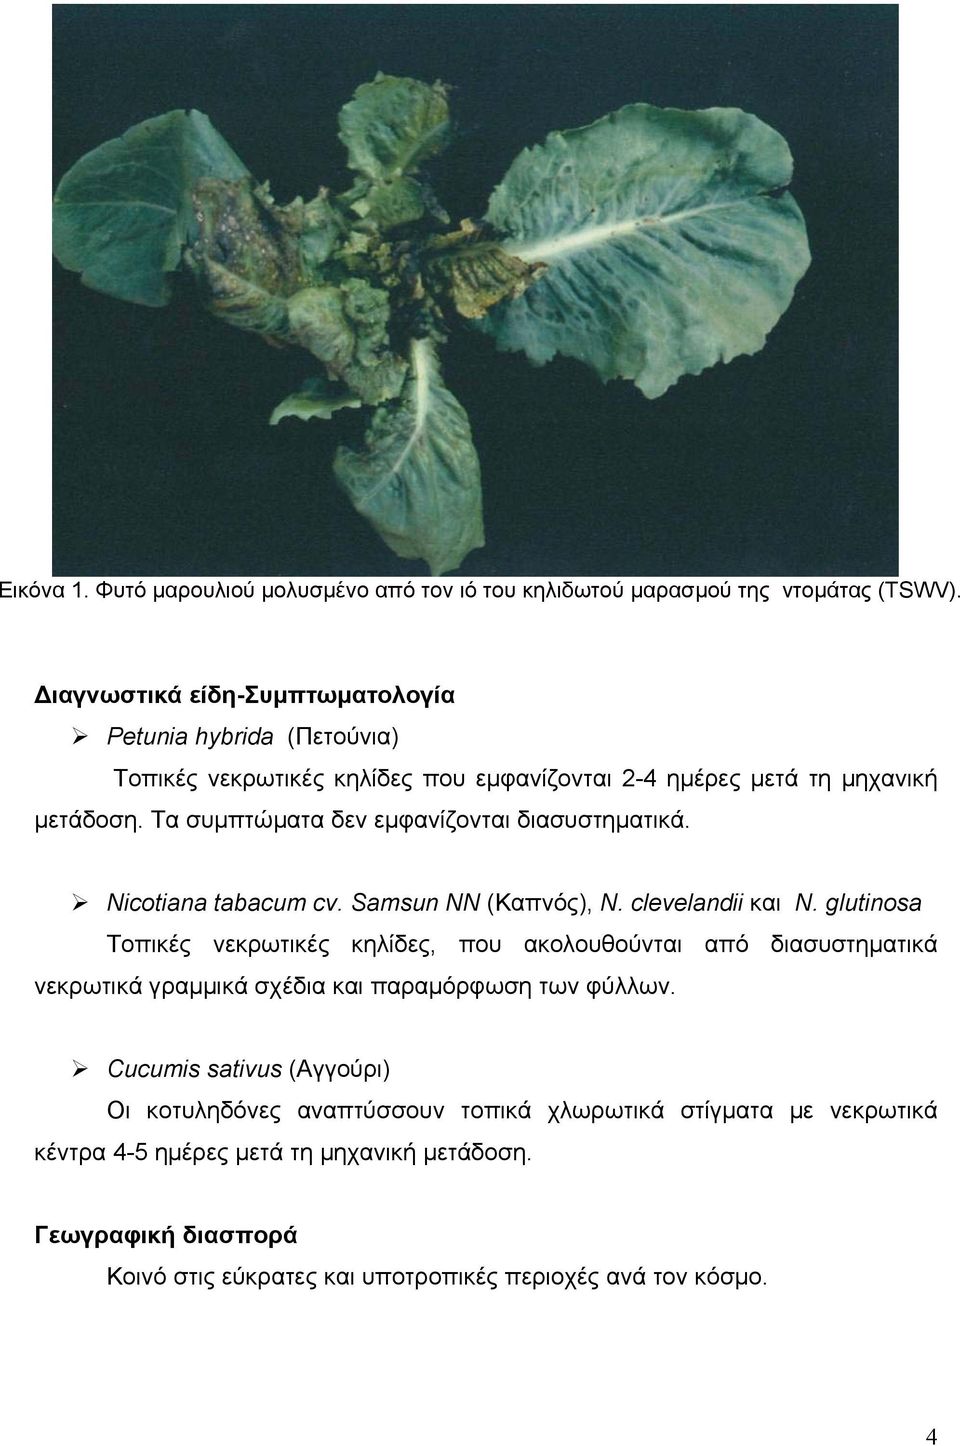 Τα συµπτώµατα δεν εµφανίζονται διασυστηµατικά. Nicotiana tabacum cv. Samsun NN (Καπνός), N. clevelandii και N.